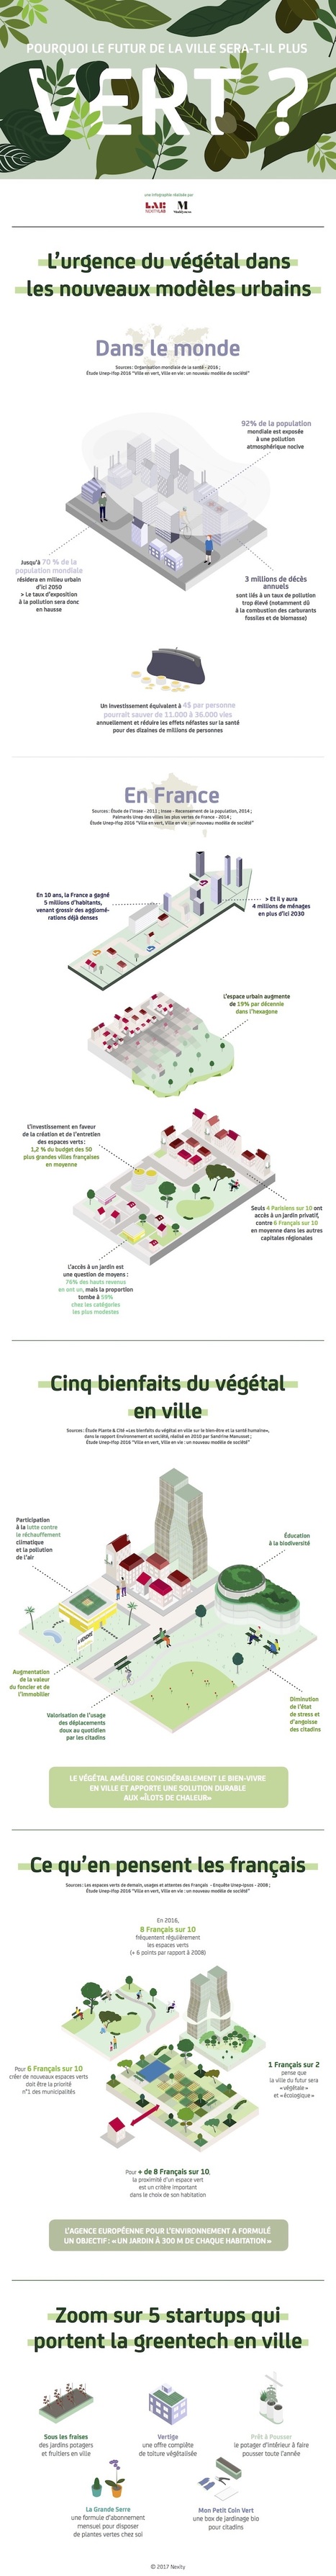 [#Infographie] Pourquoi le #futur de la #ville sera-t-il plus #vert ? #Environnement | Biodiversité - @ZEHUB on Twitter | Scoop.it